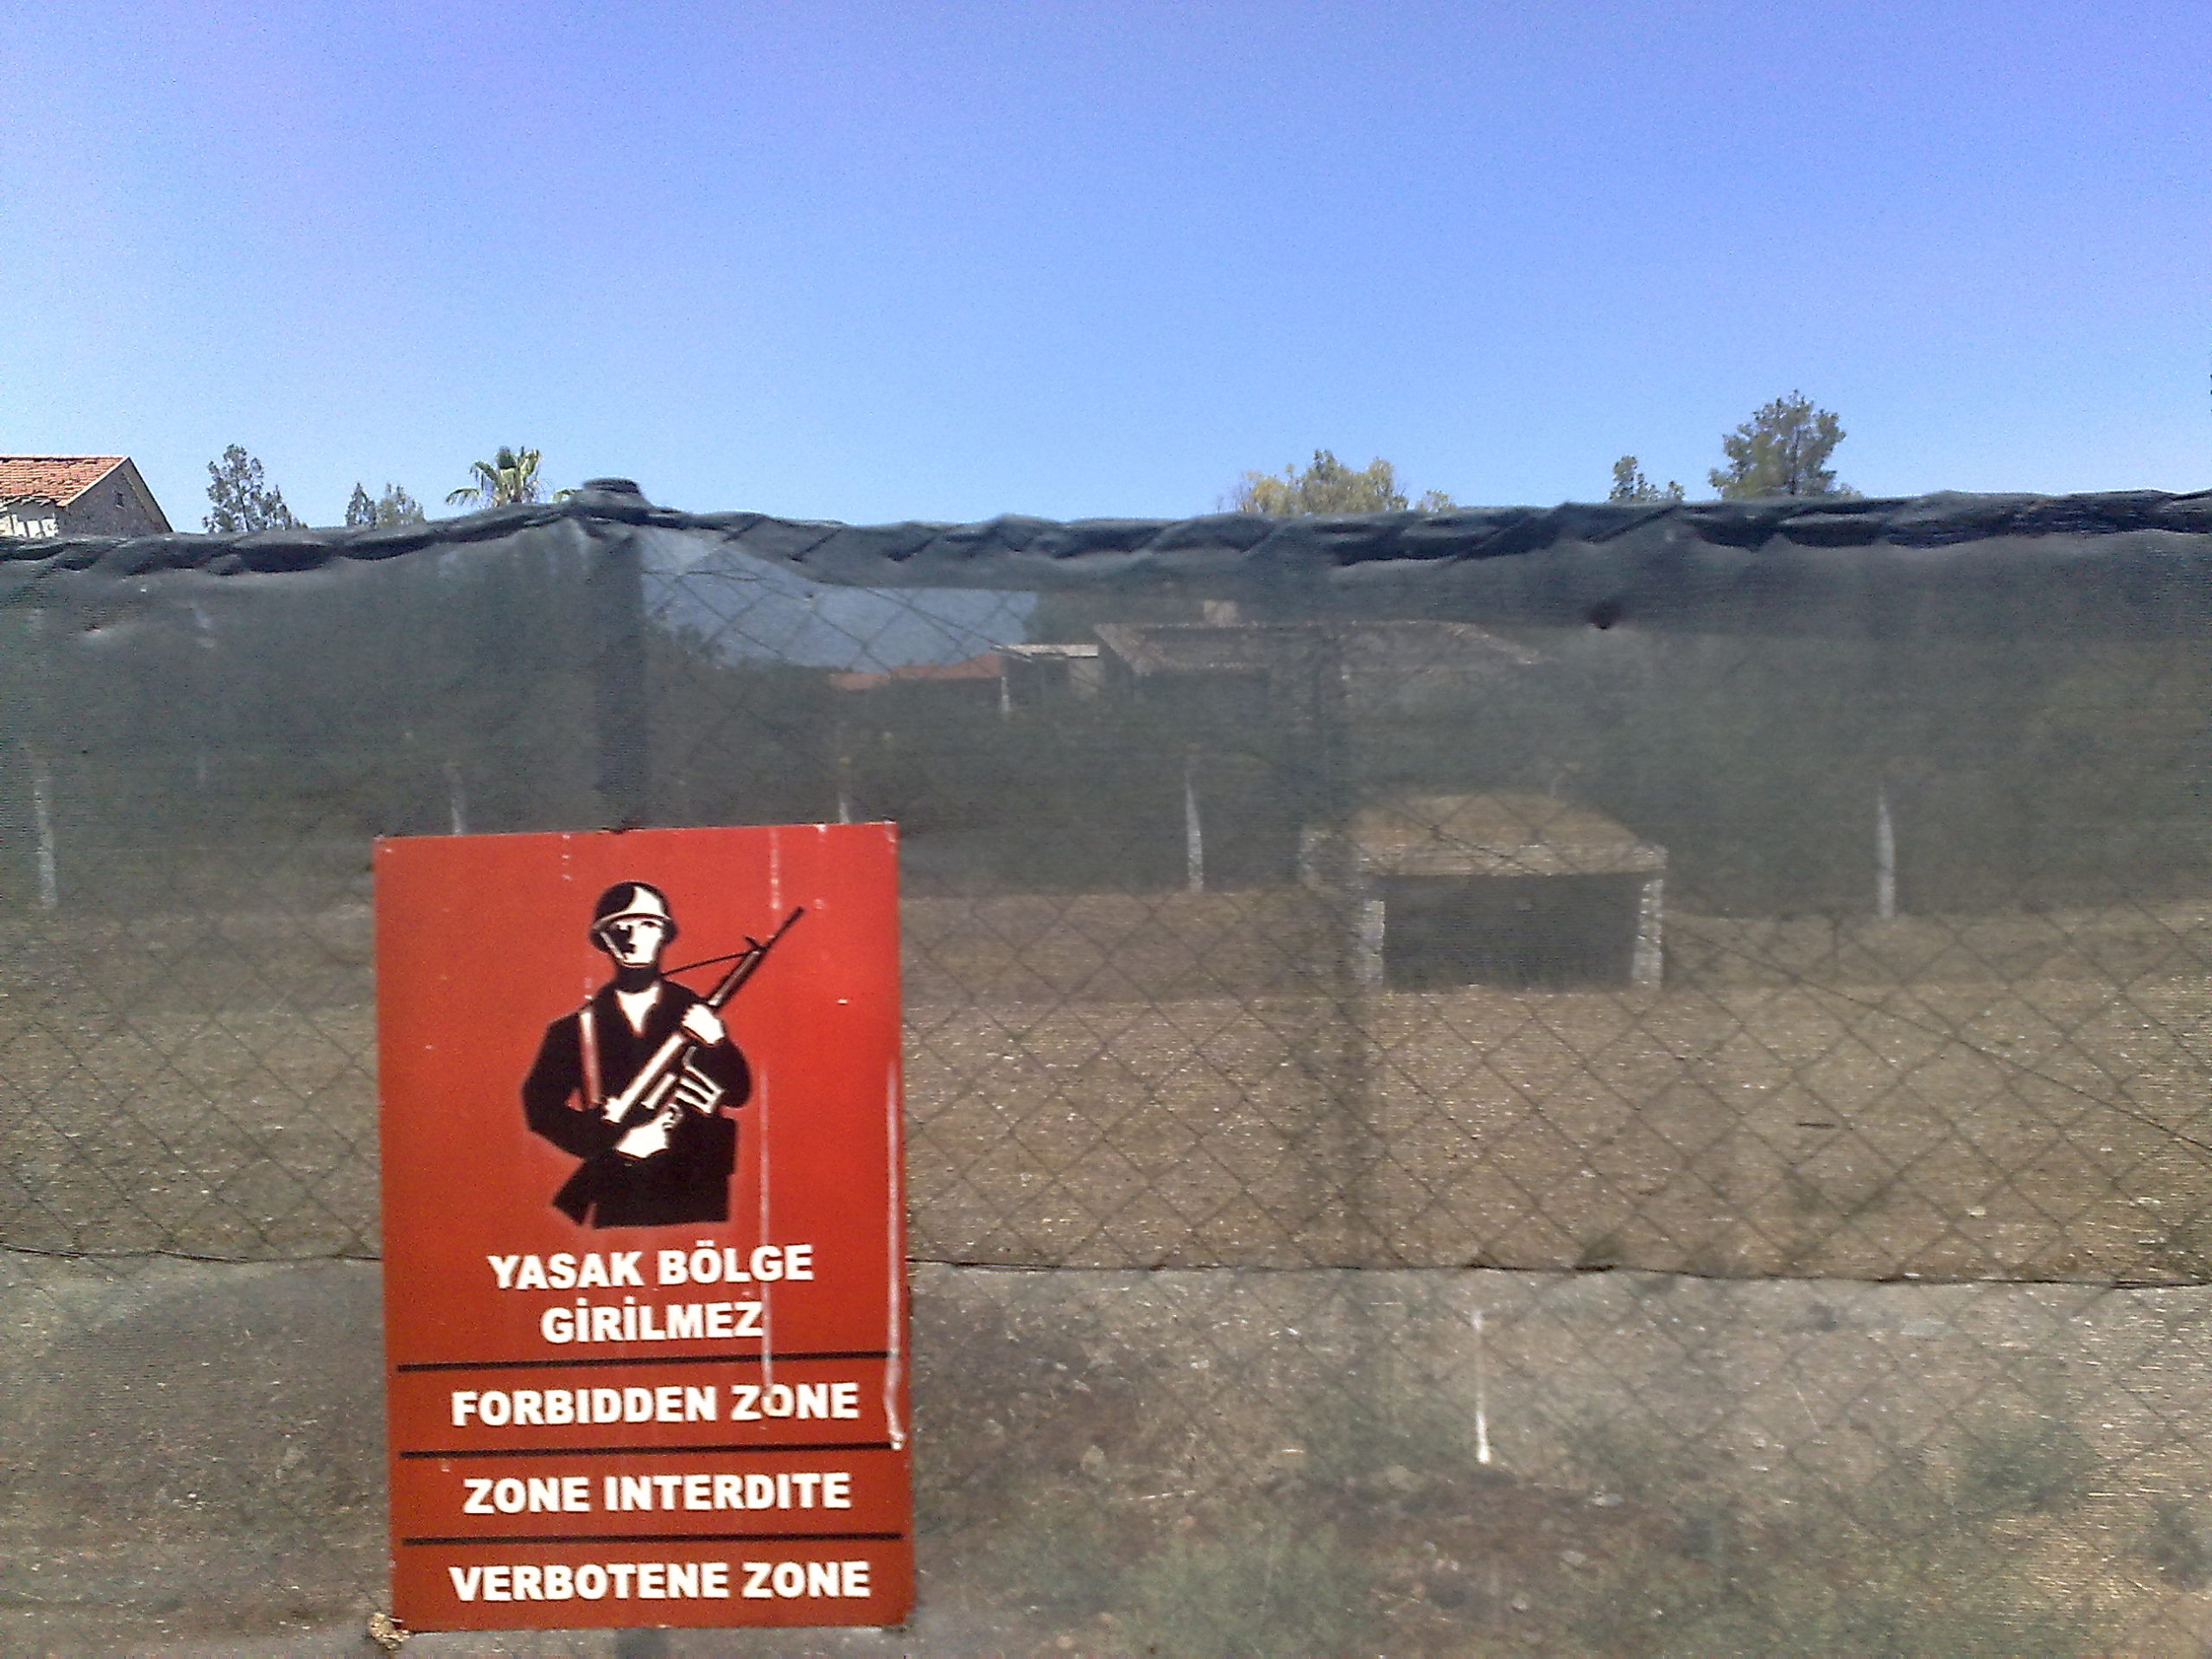 Et gjerde med en plakat i rødt der det er bilde av en soldat og det står "forbudt sone" på ulike språk.